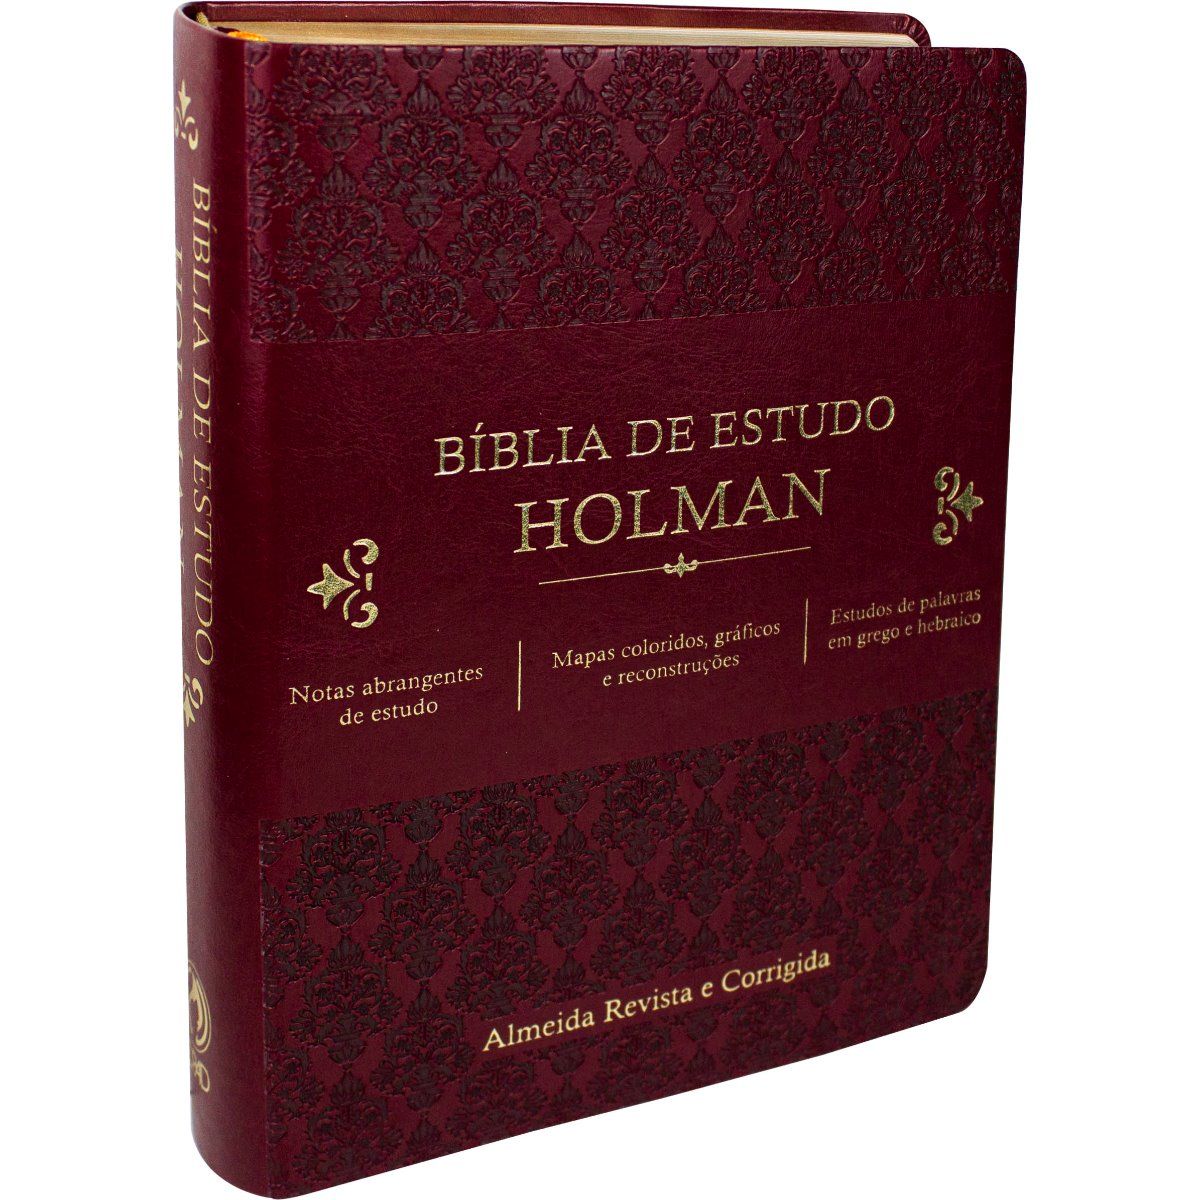 Bíblia de Estudo Holman - Couro sintético Vinho: Almeida Revista e Corrigida (ARC) - Universo Bíblico Rs